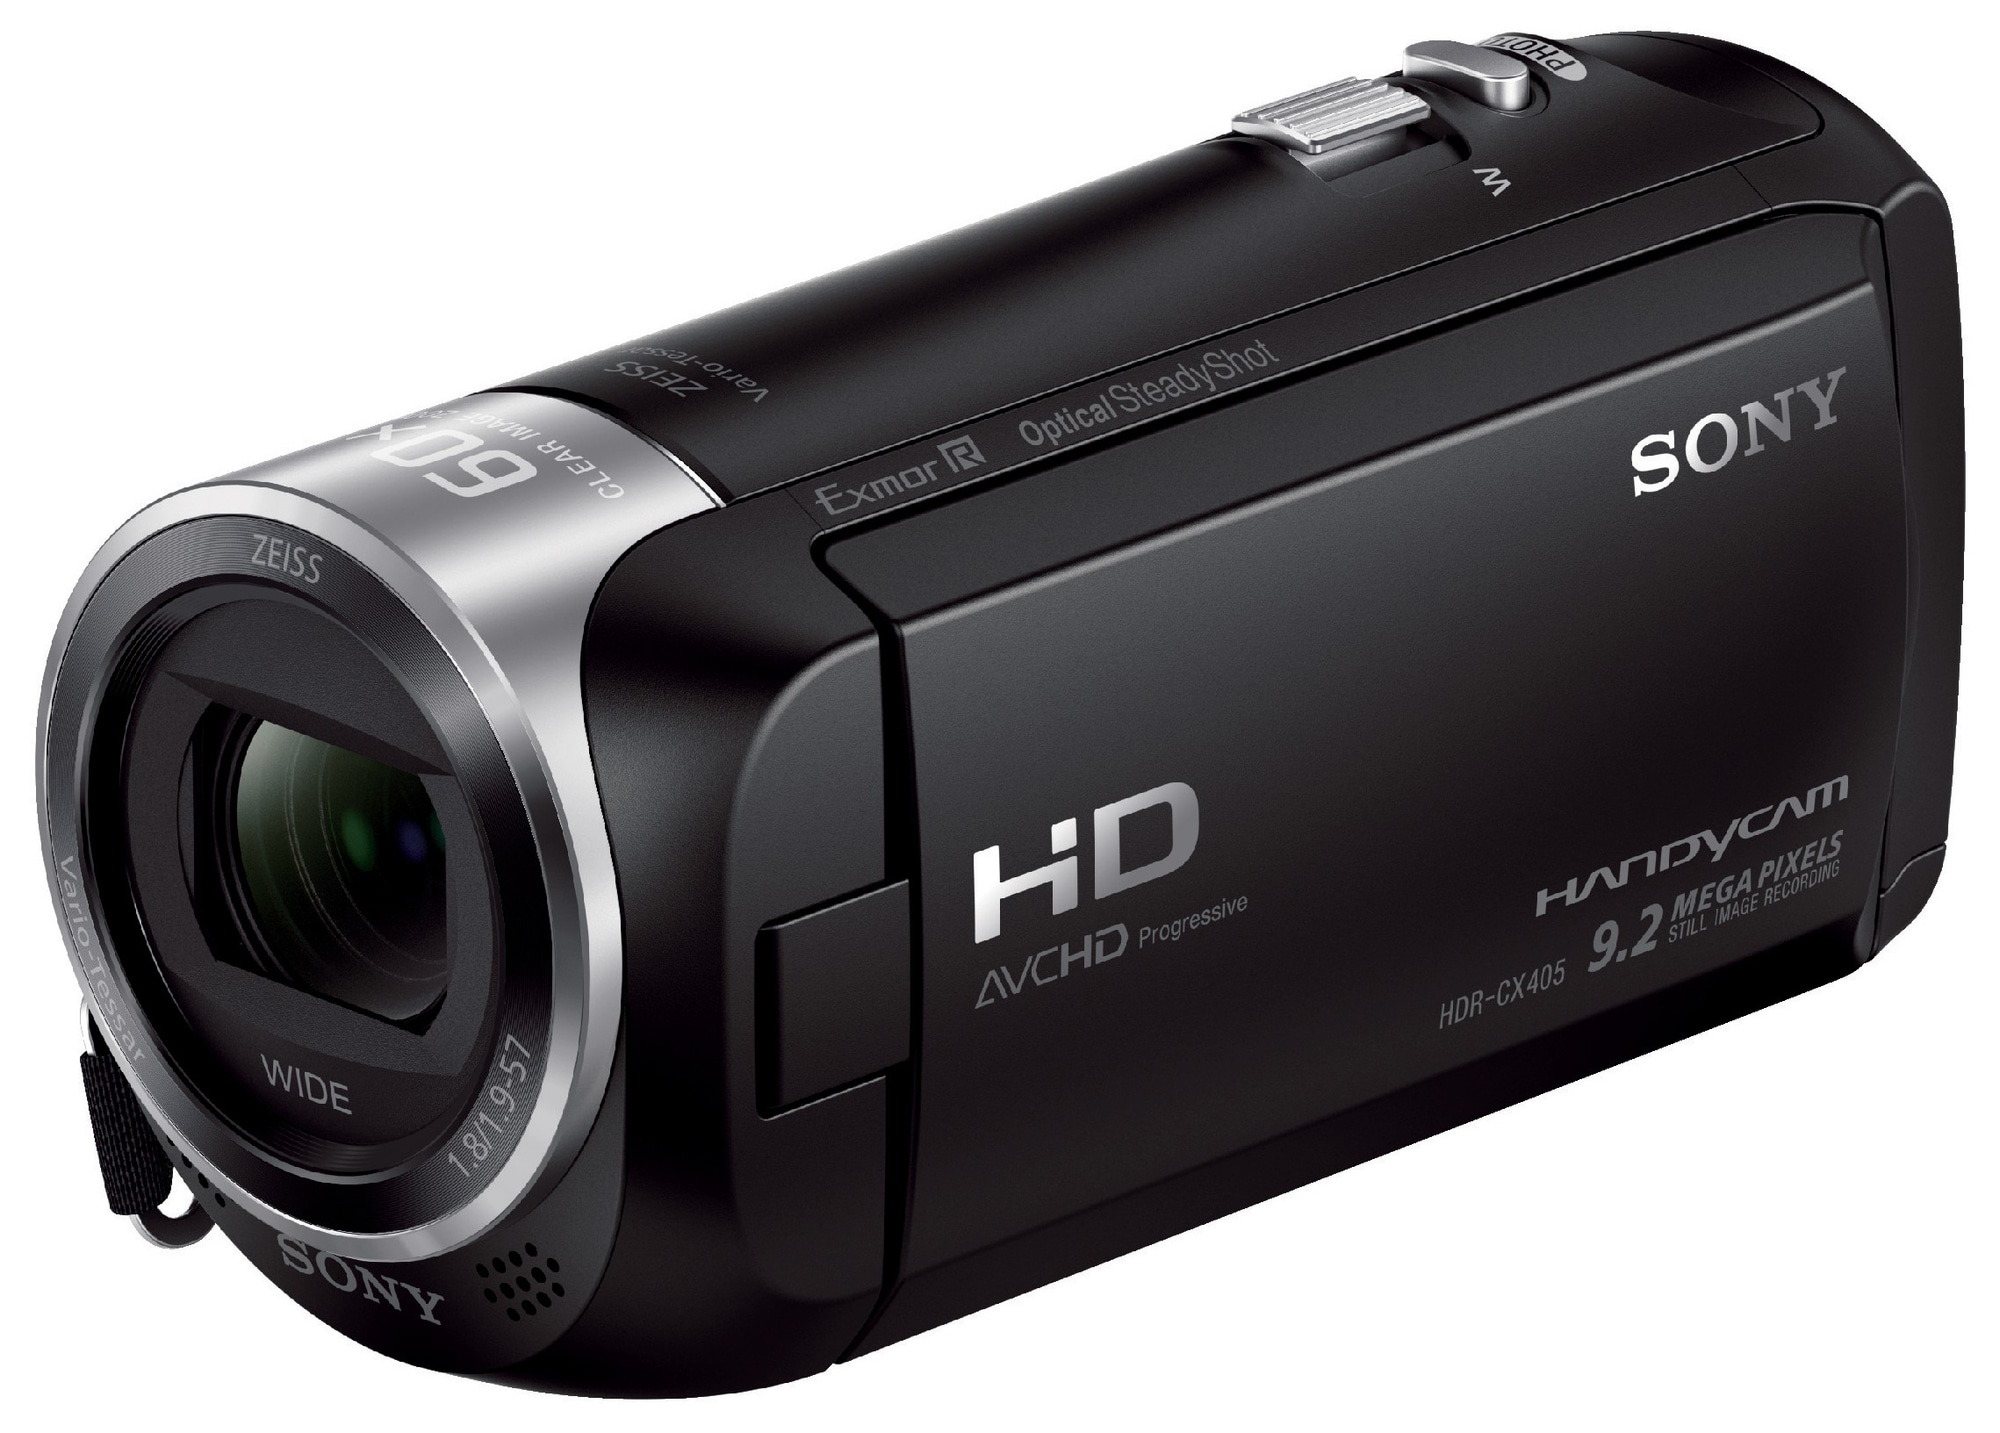 Sony Handycam HDR-CX405 videokamera - sort | Elgiganten